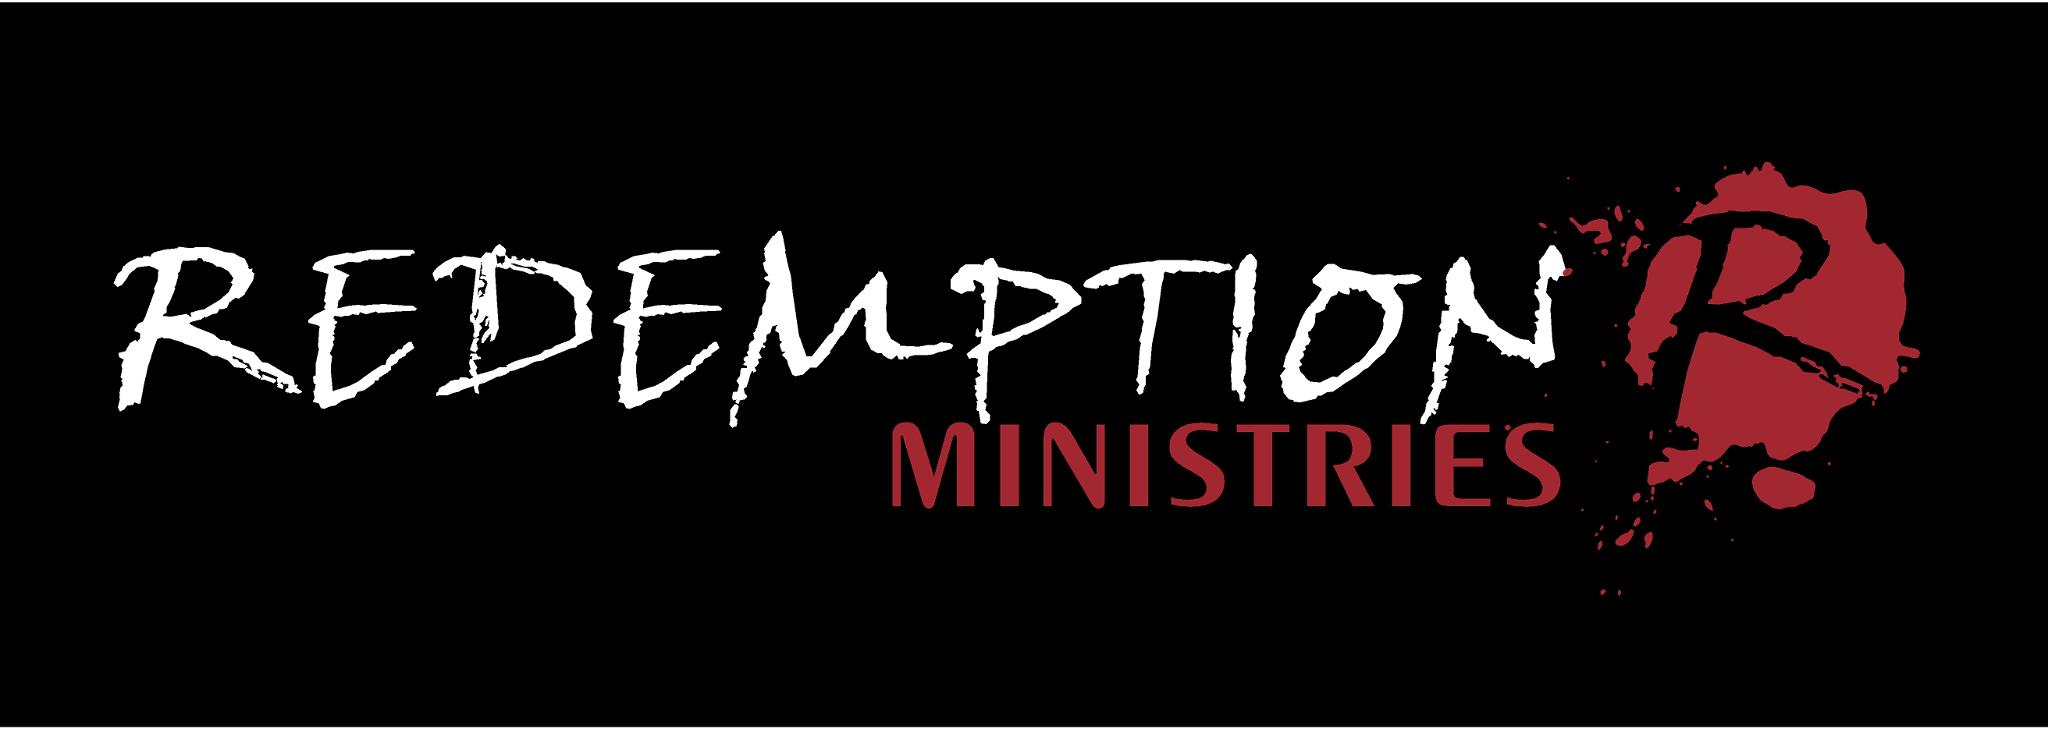 Redemption Ministries